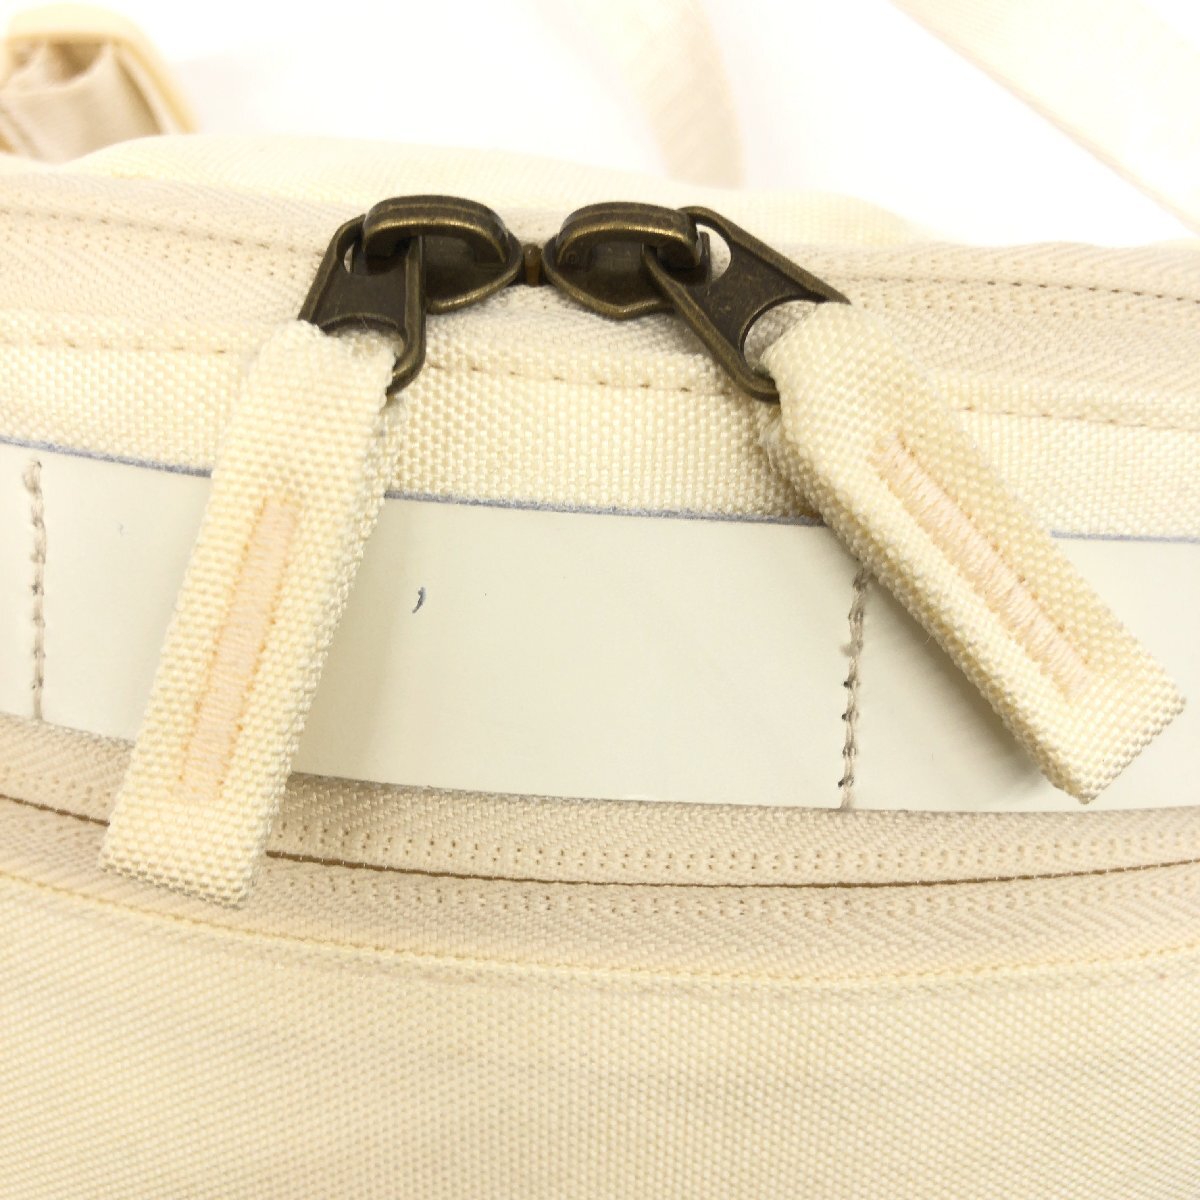 maigoya мой goya обычная цена 6,800 иен здесь сумка часть телячья кожа кожа поясная сумка белый "теплый" белый сумка "body" сумка на плечо женский 